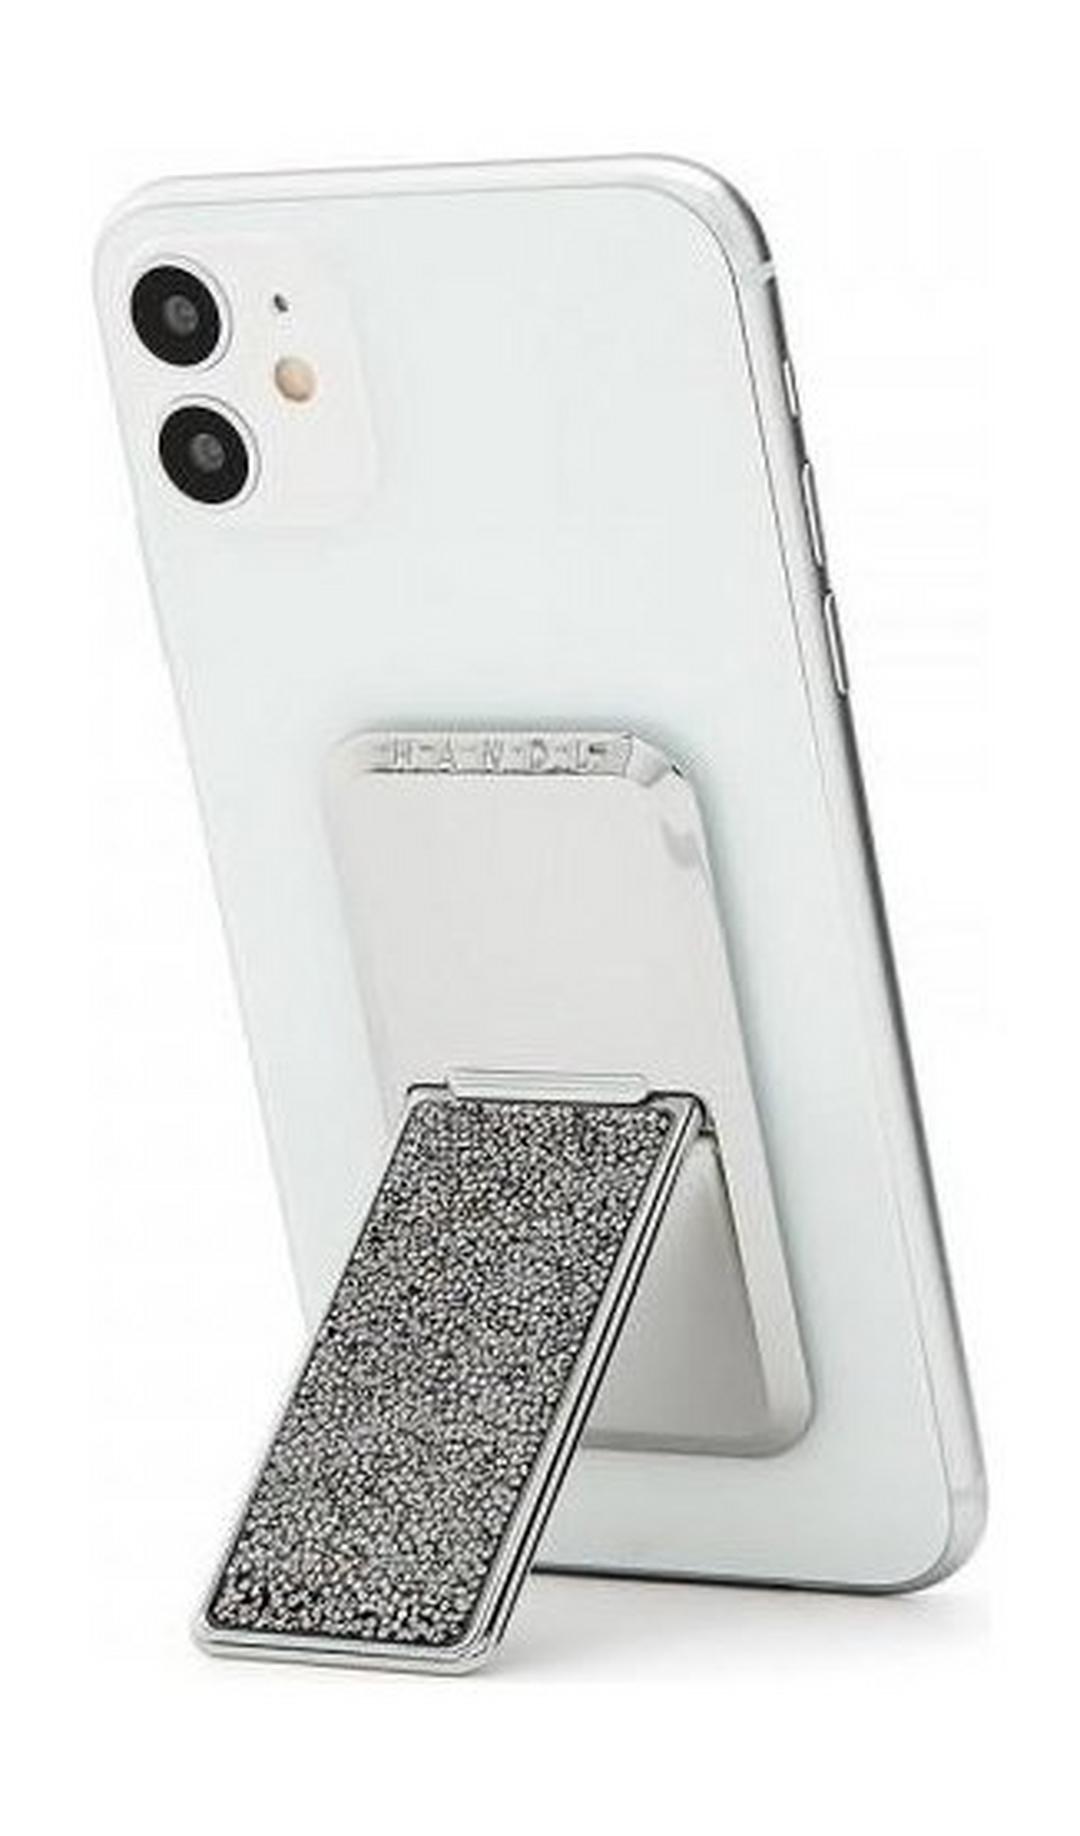 HANDLstick Crystal Smartphone Holder - Silver